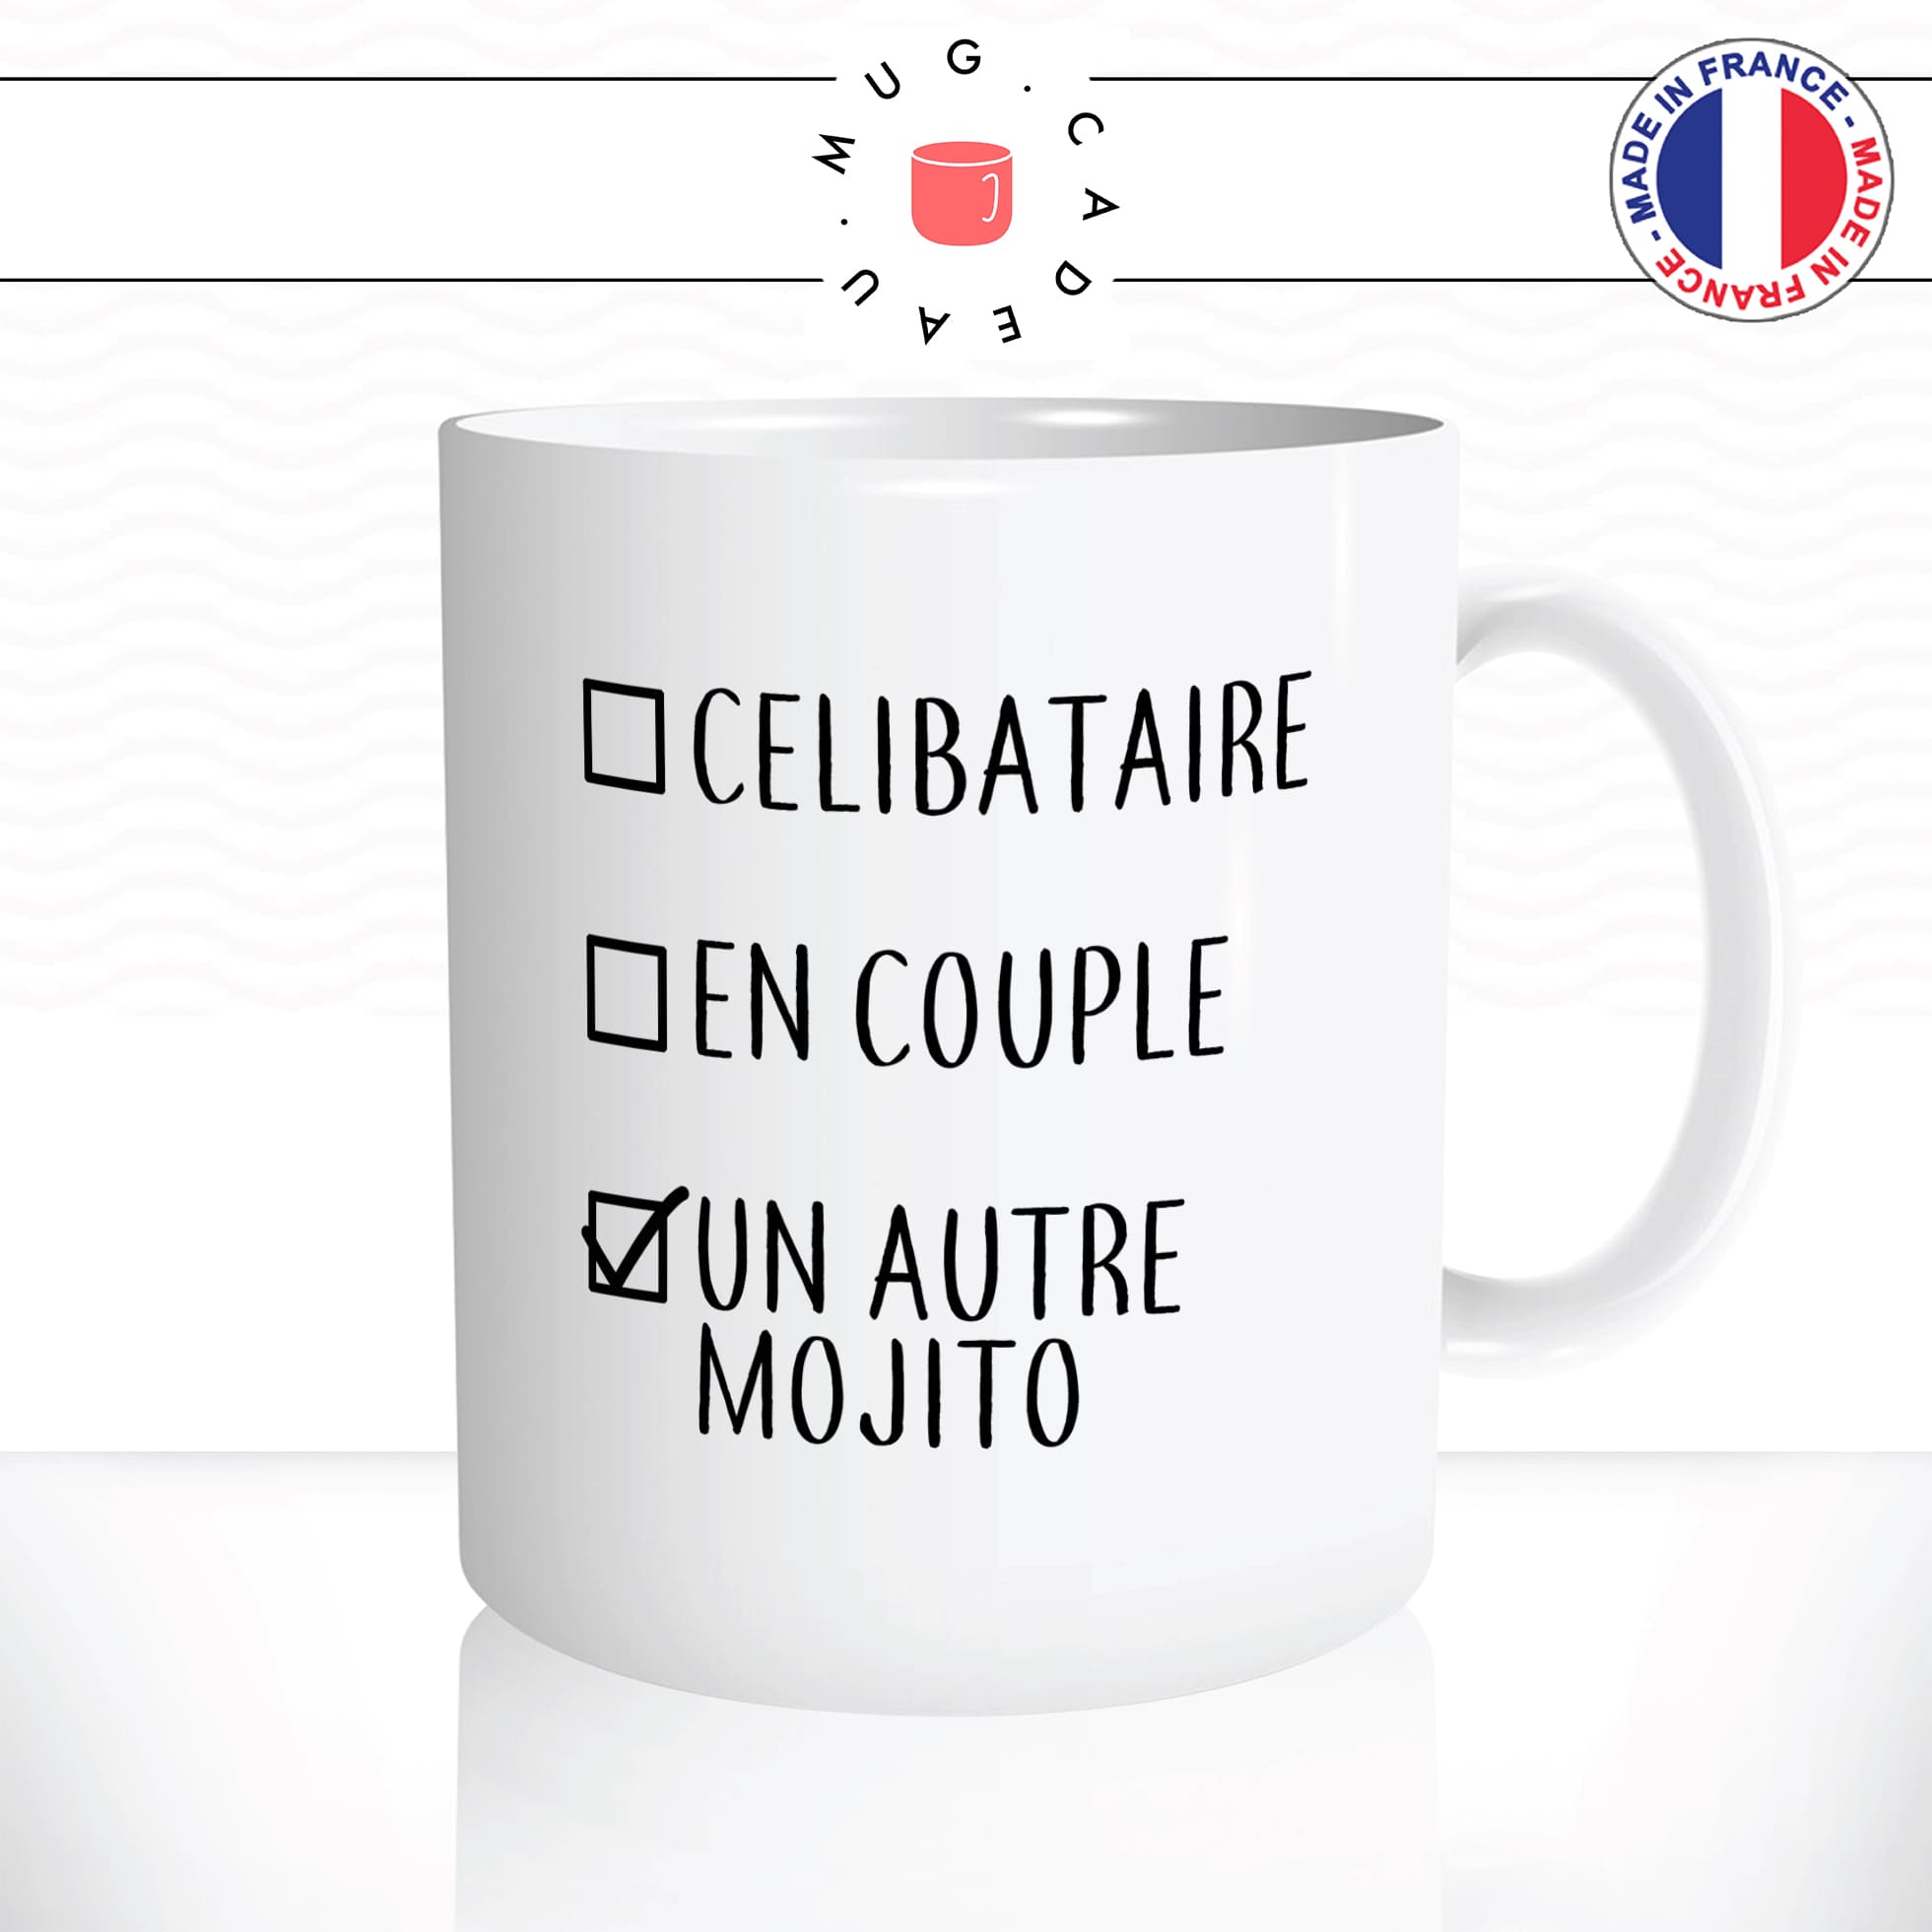 mug-tasse-celibataire-en-couple-un-autre-mojito-copines-célibat-humour-drole-original-mugs-tasses-café-thé-idée-cadeau-personnalisée2